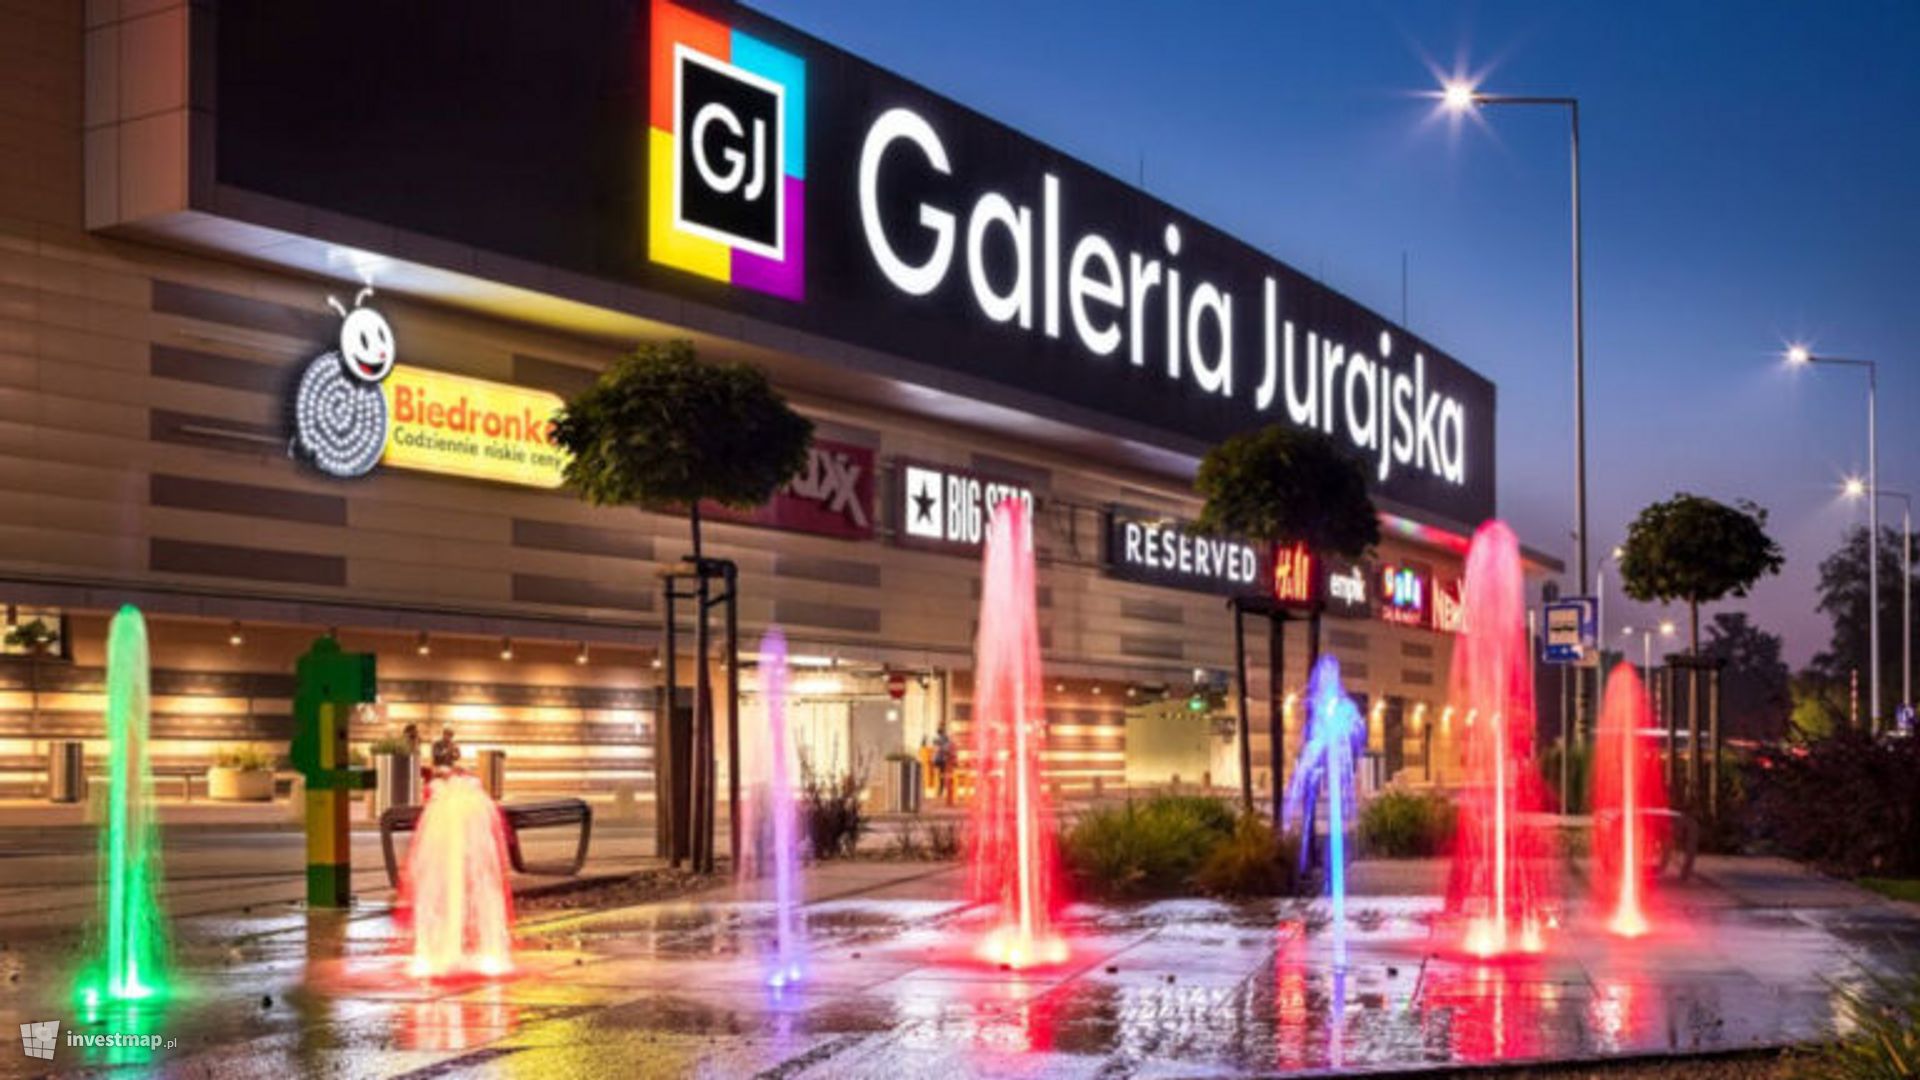 Australijska marka wzmocni ofertę Galerii Jurajskiej w Częstochowie